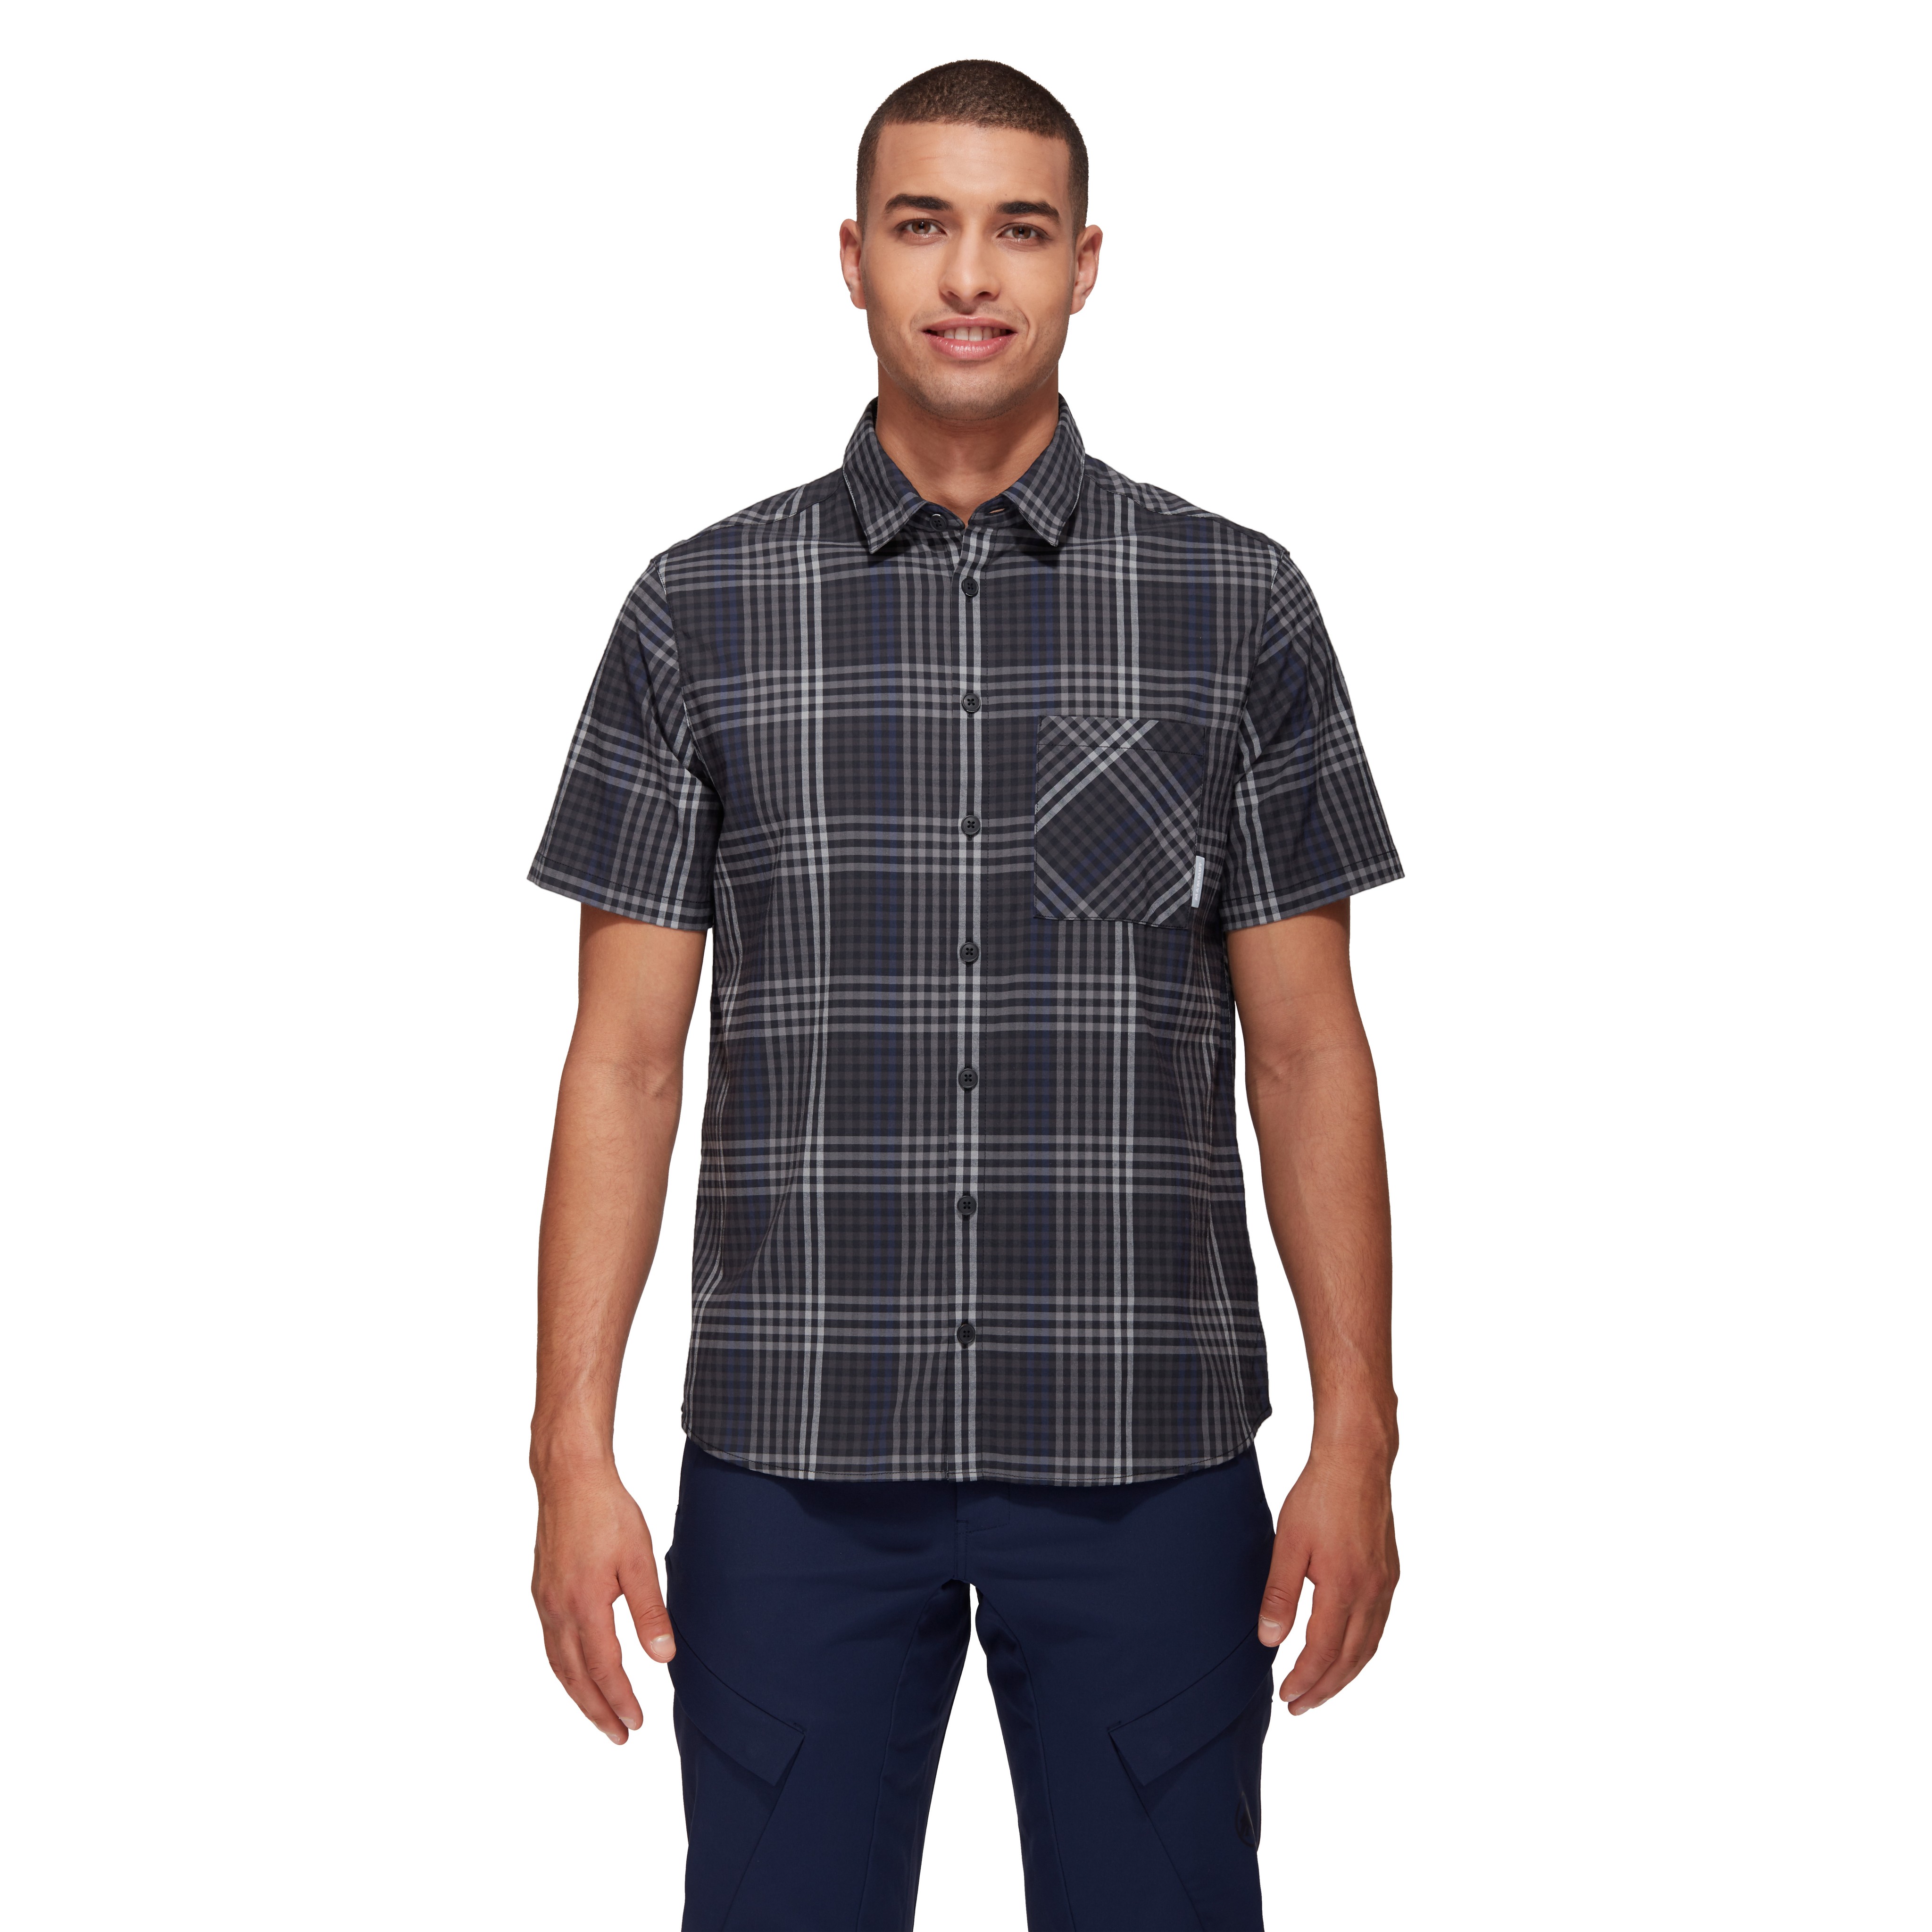 Calanca Shirt Men product image